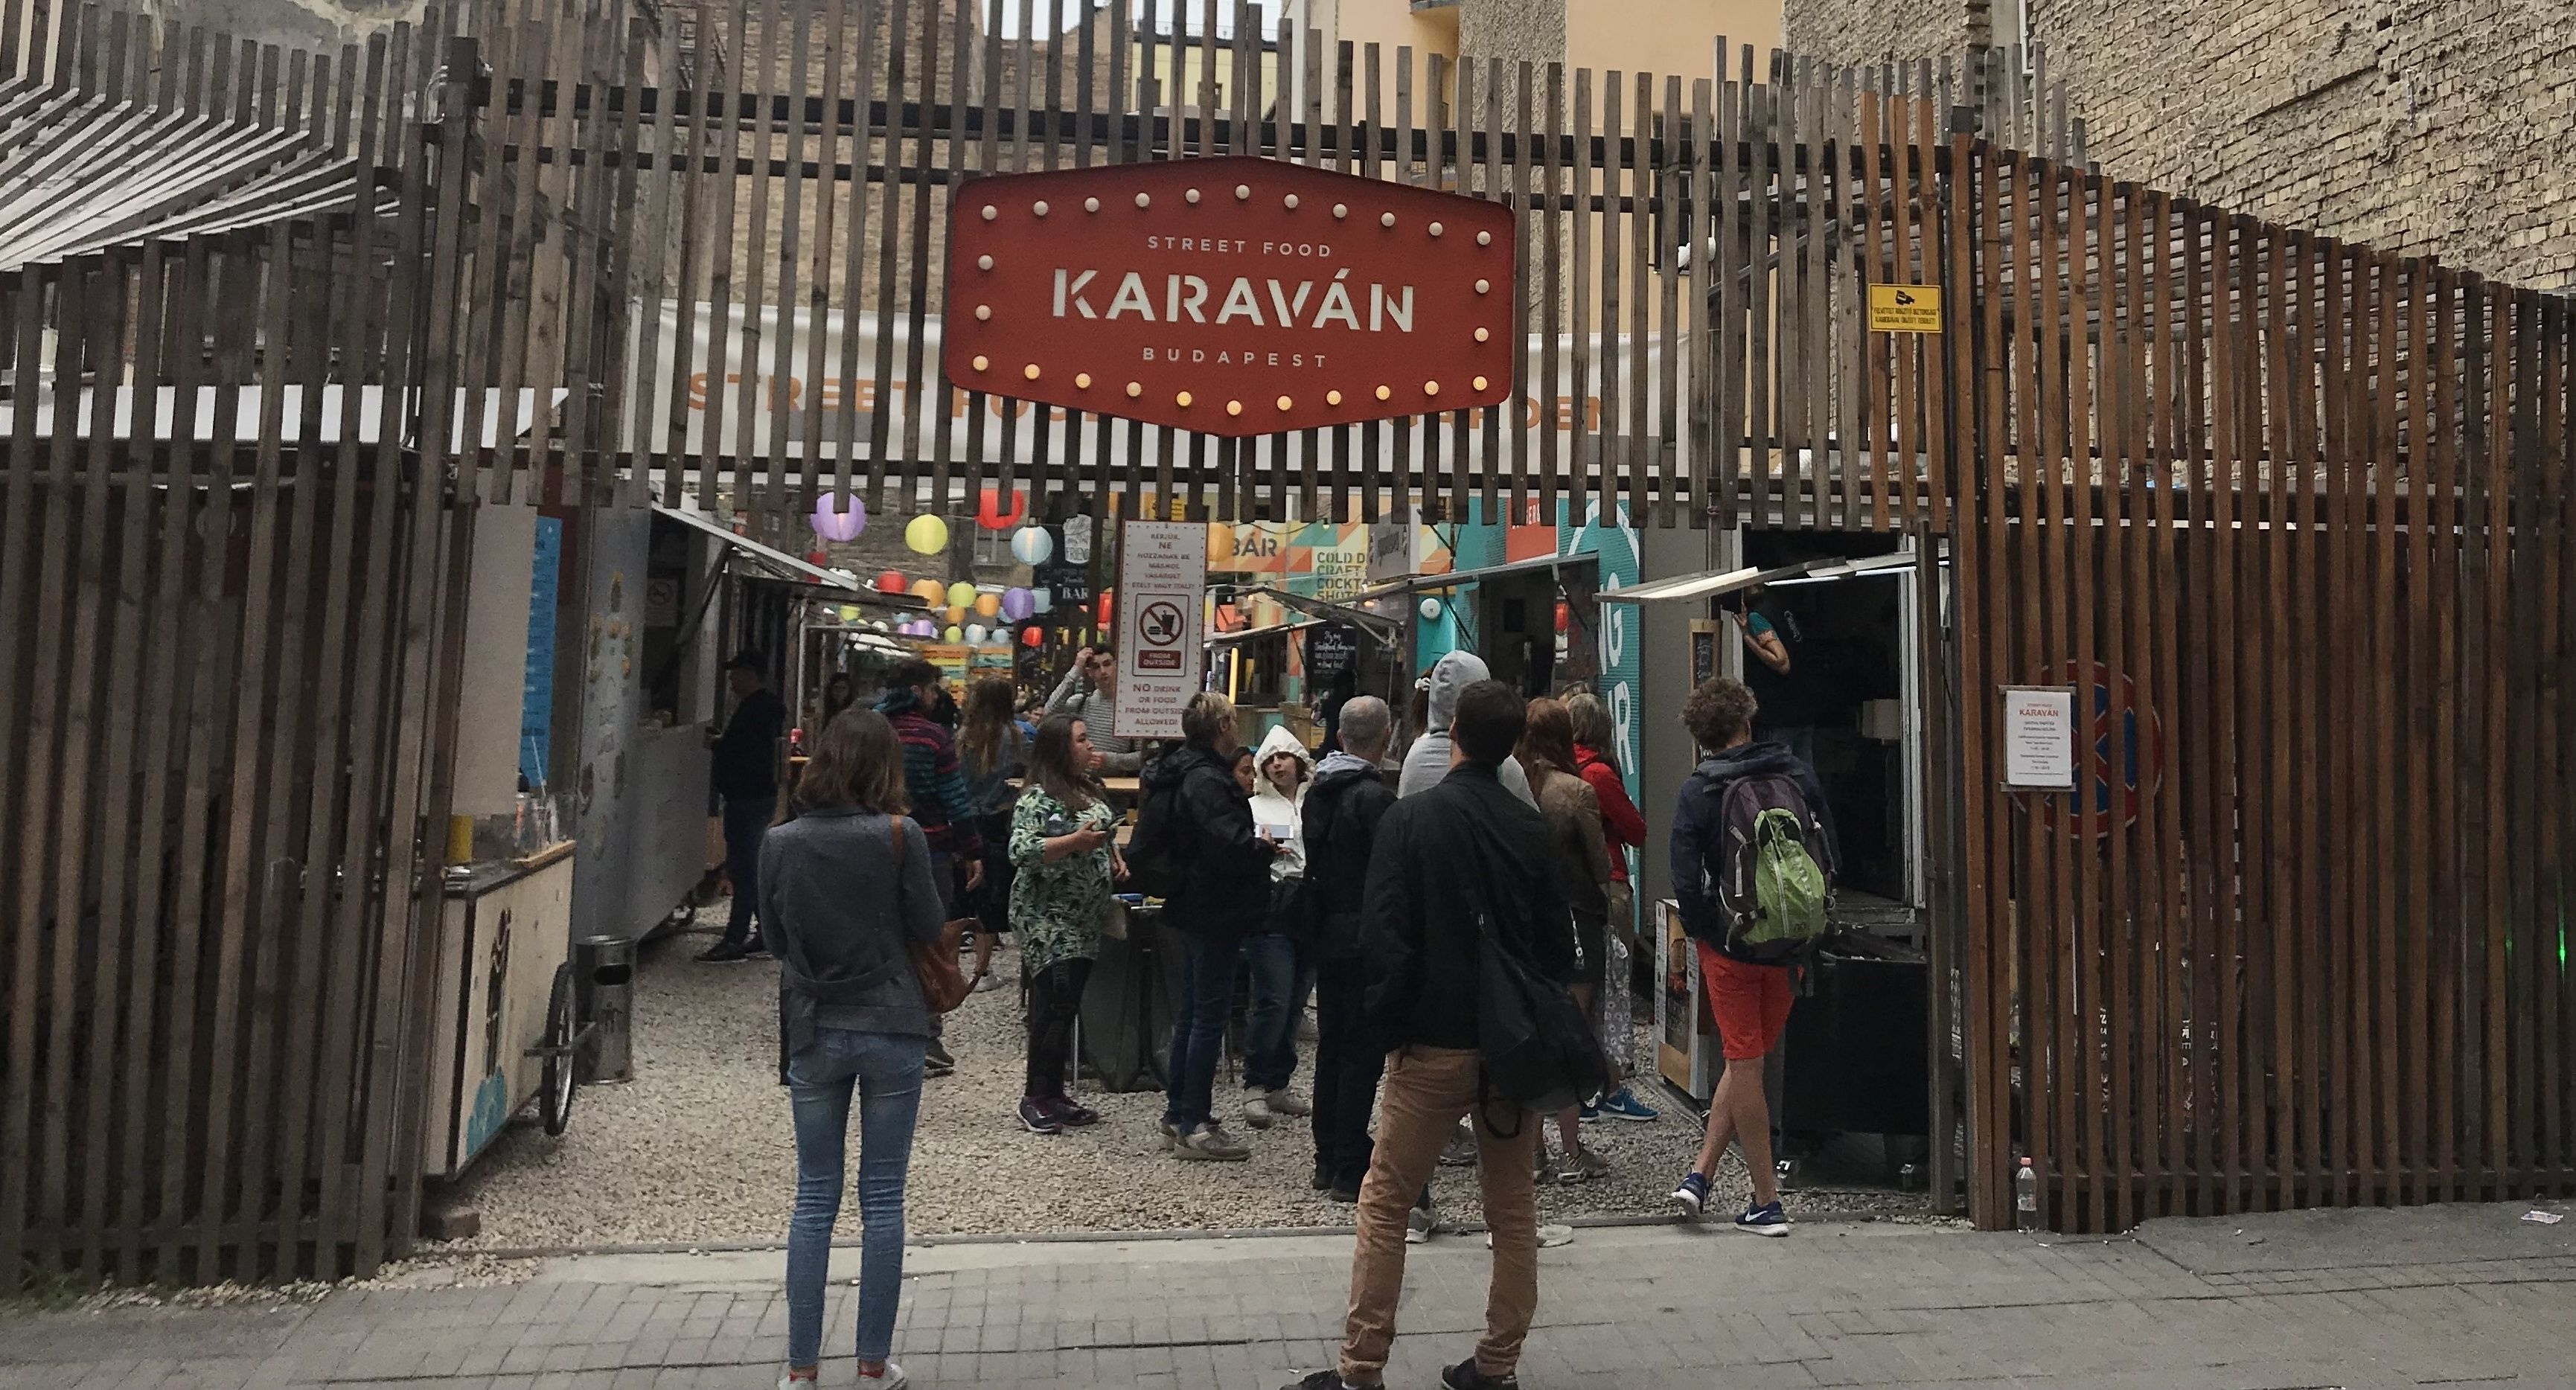 Karavan Street Food, Budapest